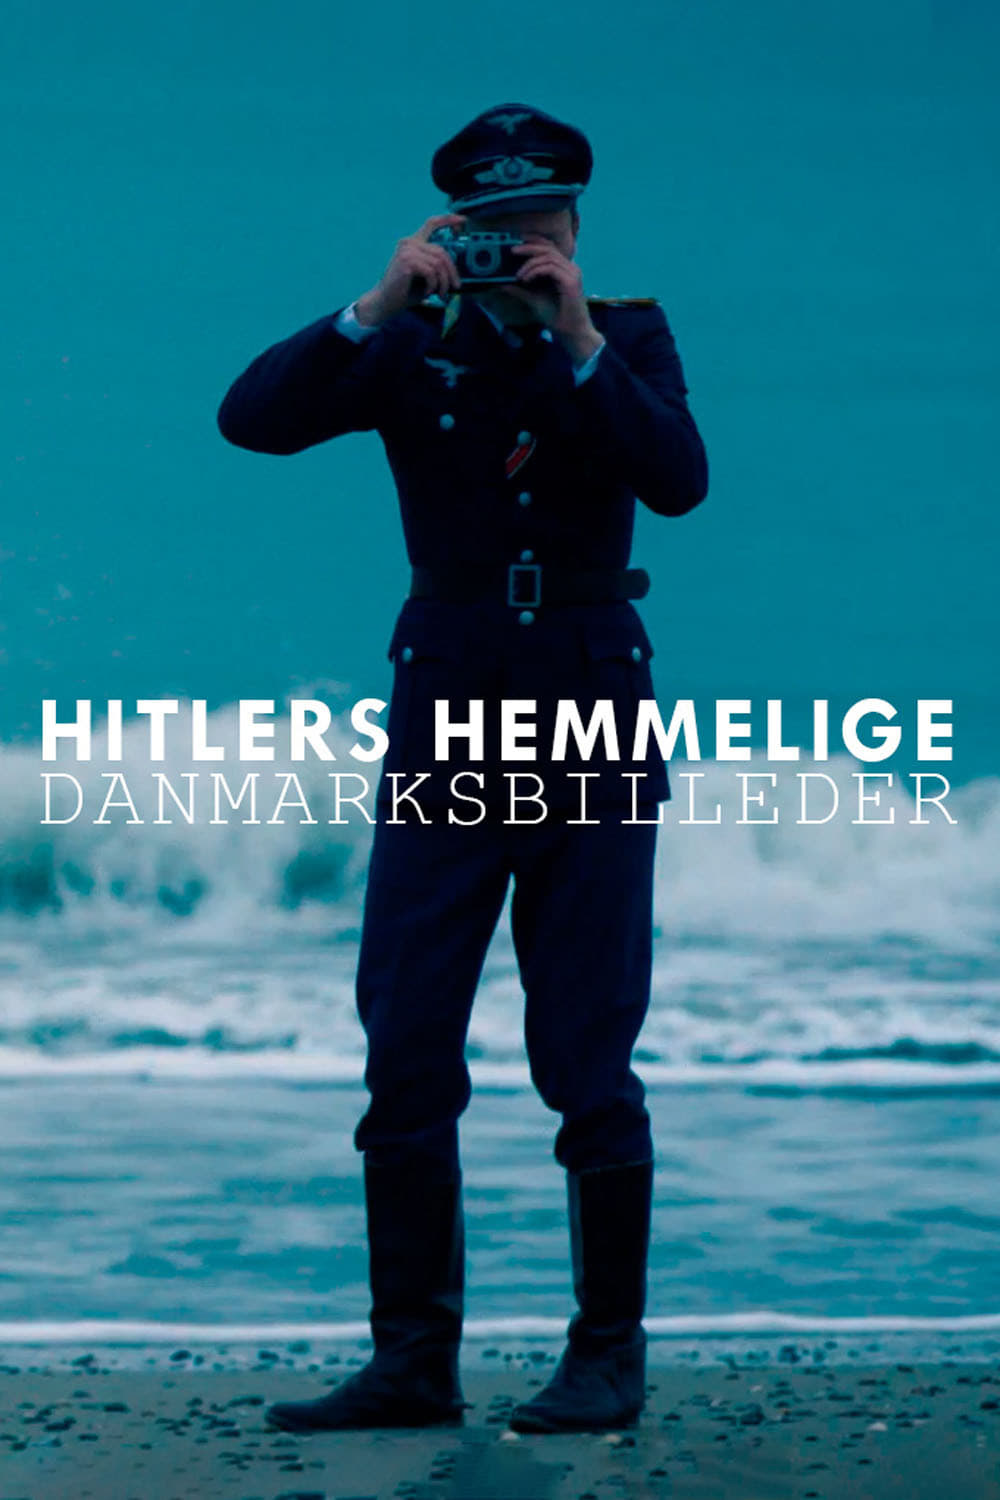 Hitlers hemmelige danmarksbilleder